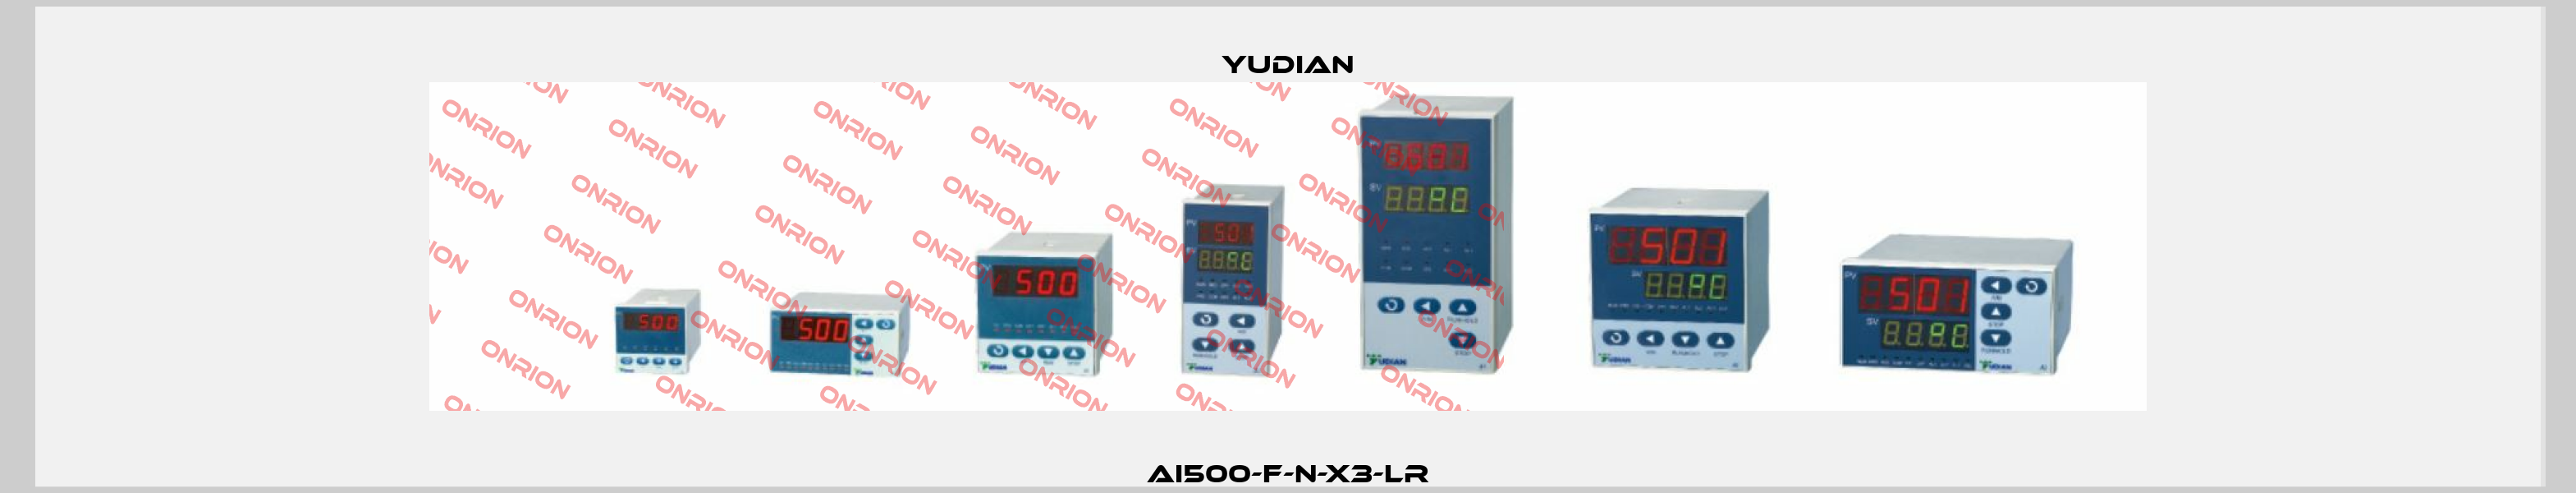 AI500-F-N-X3-LR Yudian